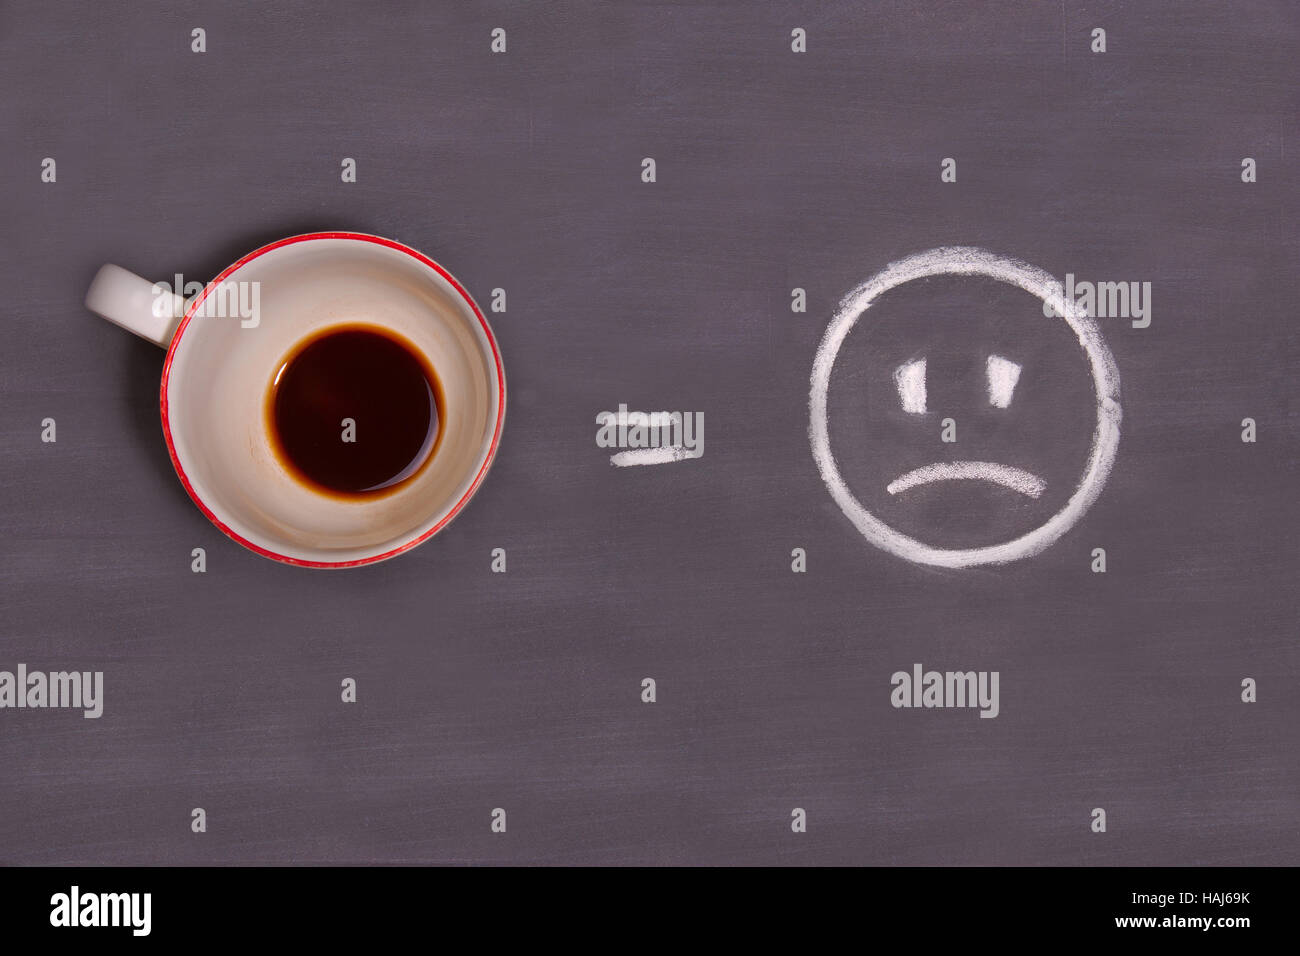 Eine Tasse Kaffee und traurige Smiley mit Kreide auf den Tisch gezogen. Energie aus dem Kaffee. Stockfoto